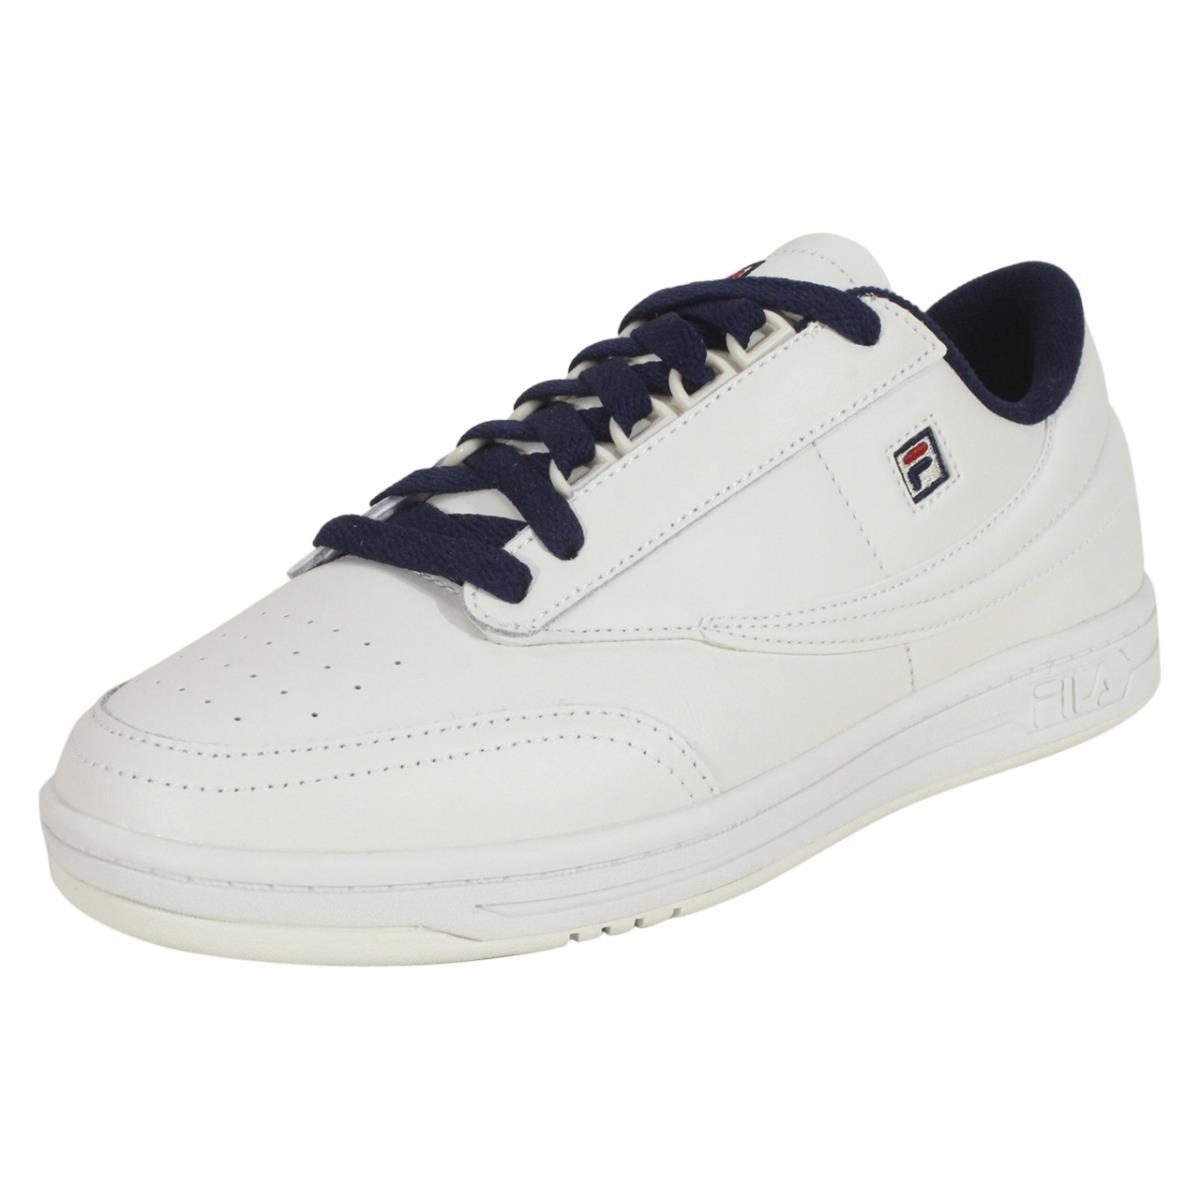 Fila Tennis-88 Sneakers Men`s Low Top Shoes Gardenia/Fila Navy/Fila Red